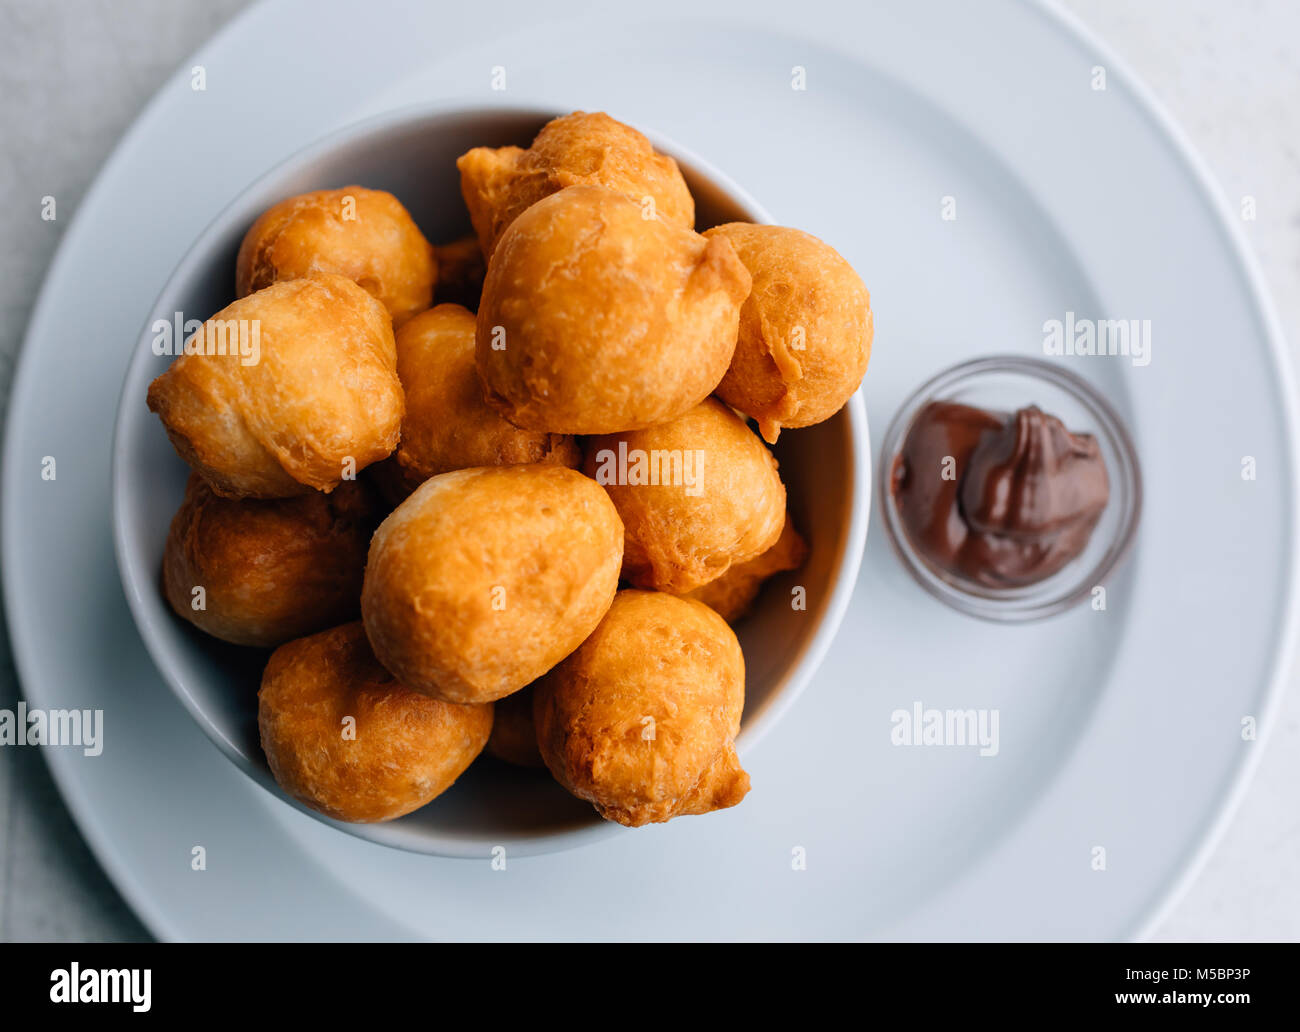 Karneval Krapfen oder Donuts oder bunuelos mit Sahne zum Frühstück serviert. Traditionelle serbische Essen - pringice. Stockfoto